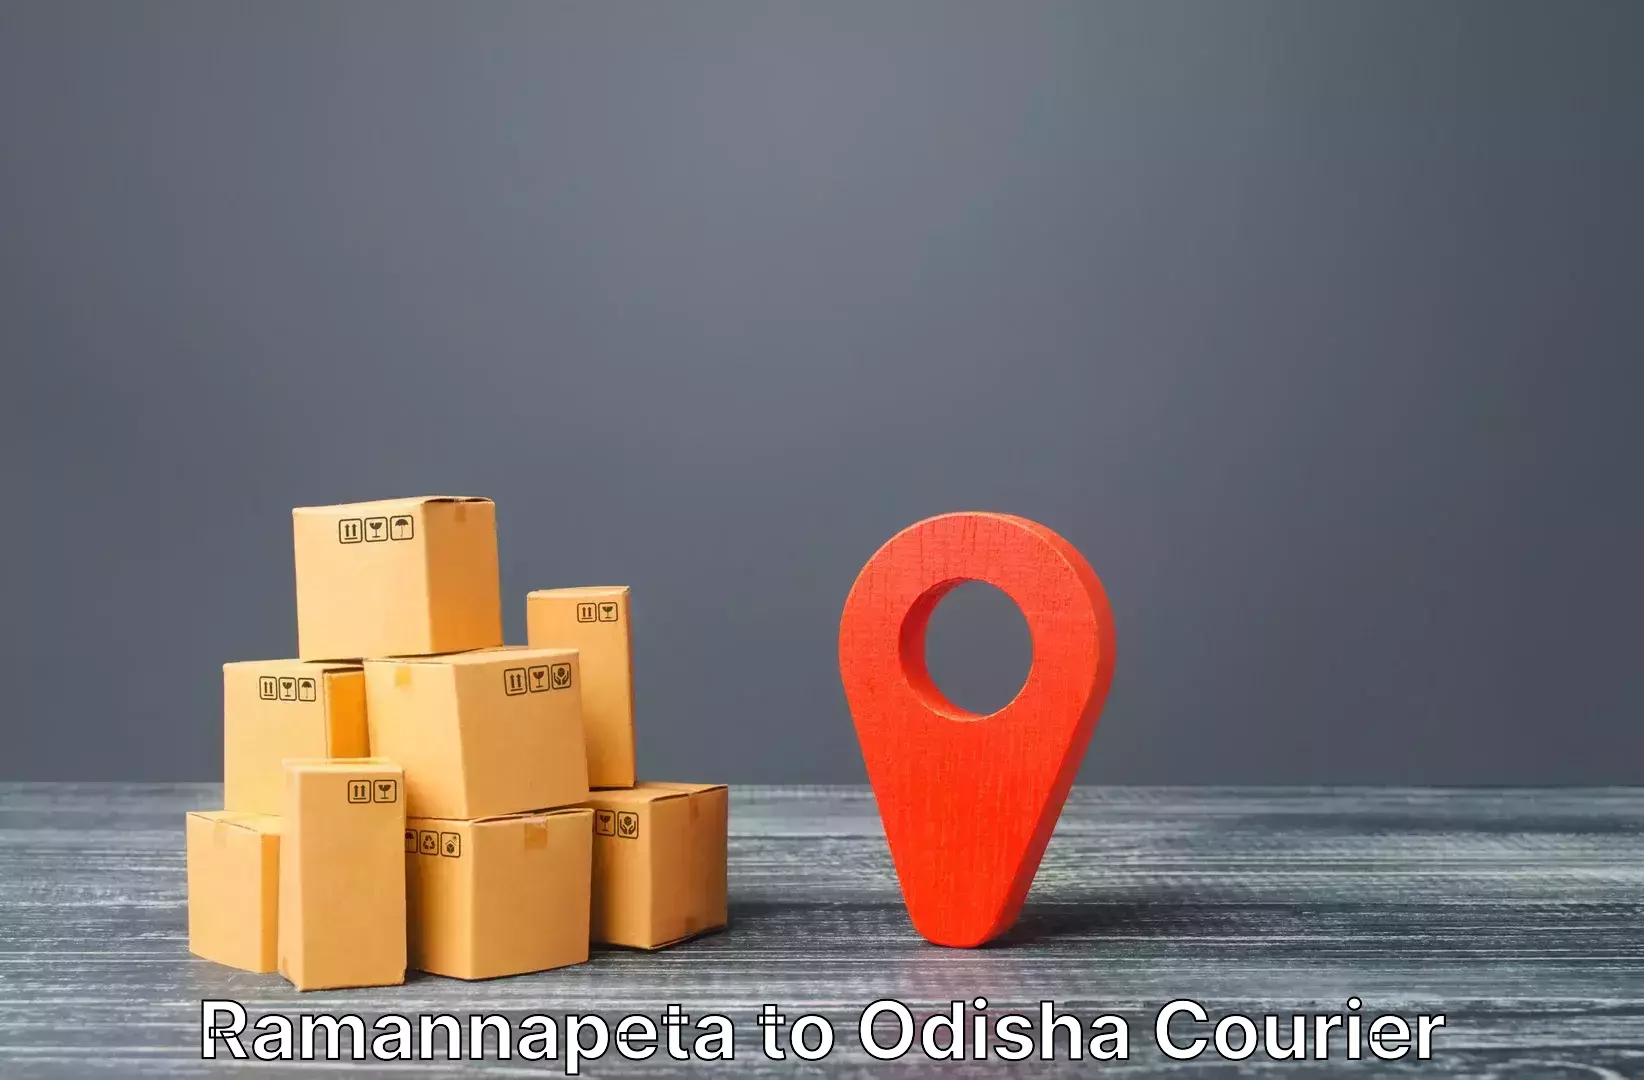 Luggage forwarding service Ramannapeta to Ukhunda